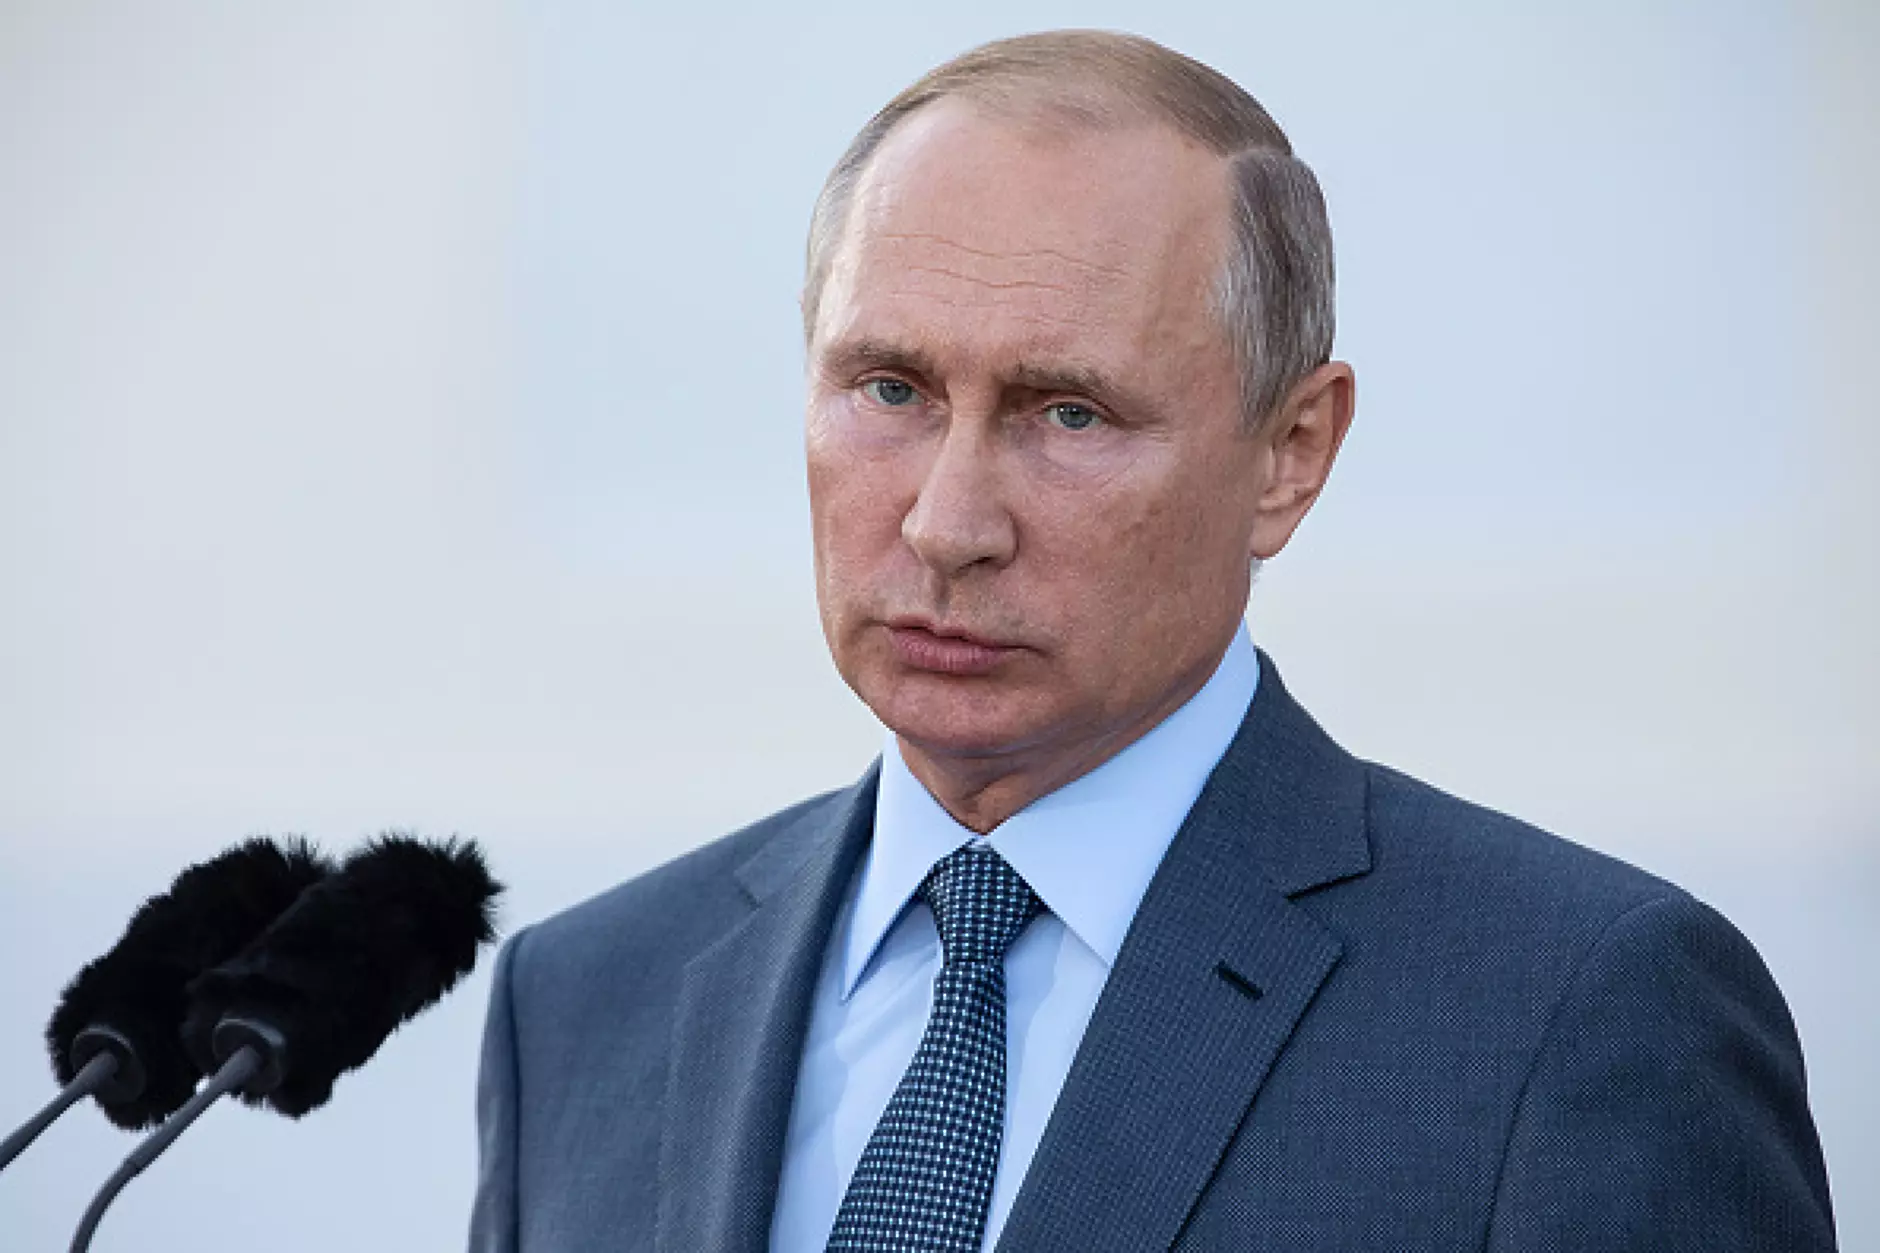 Путин се надява Западът да се откаже от политиката на санкции 